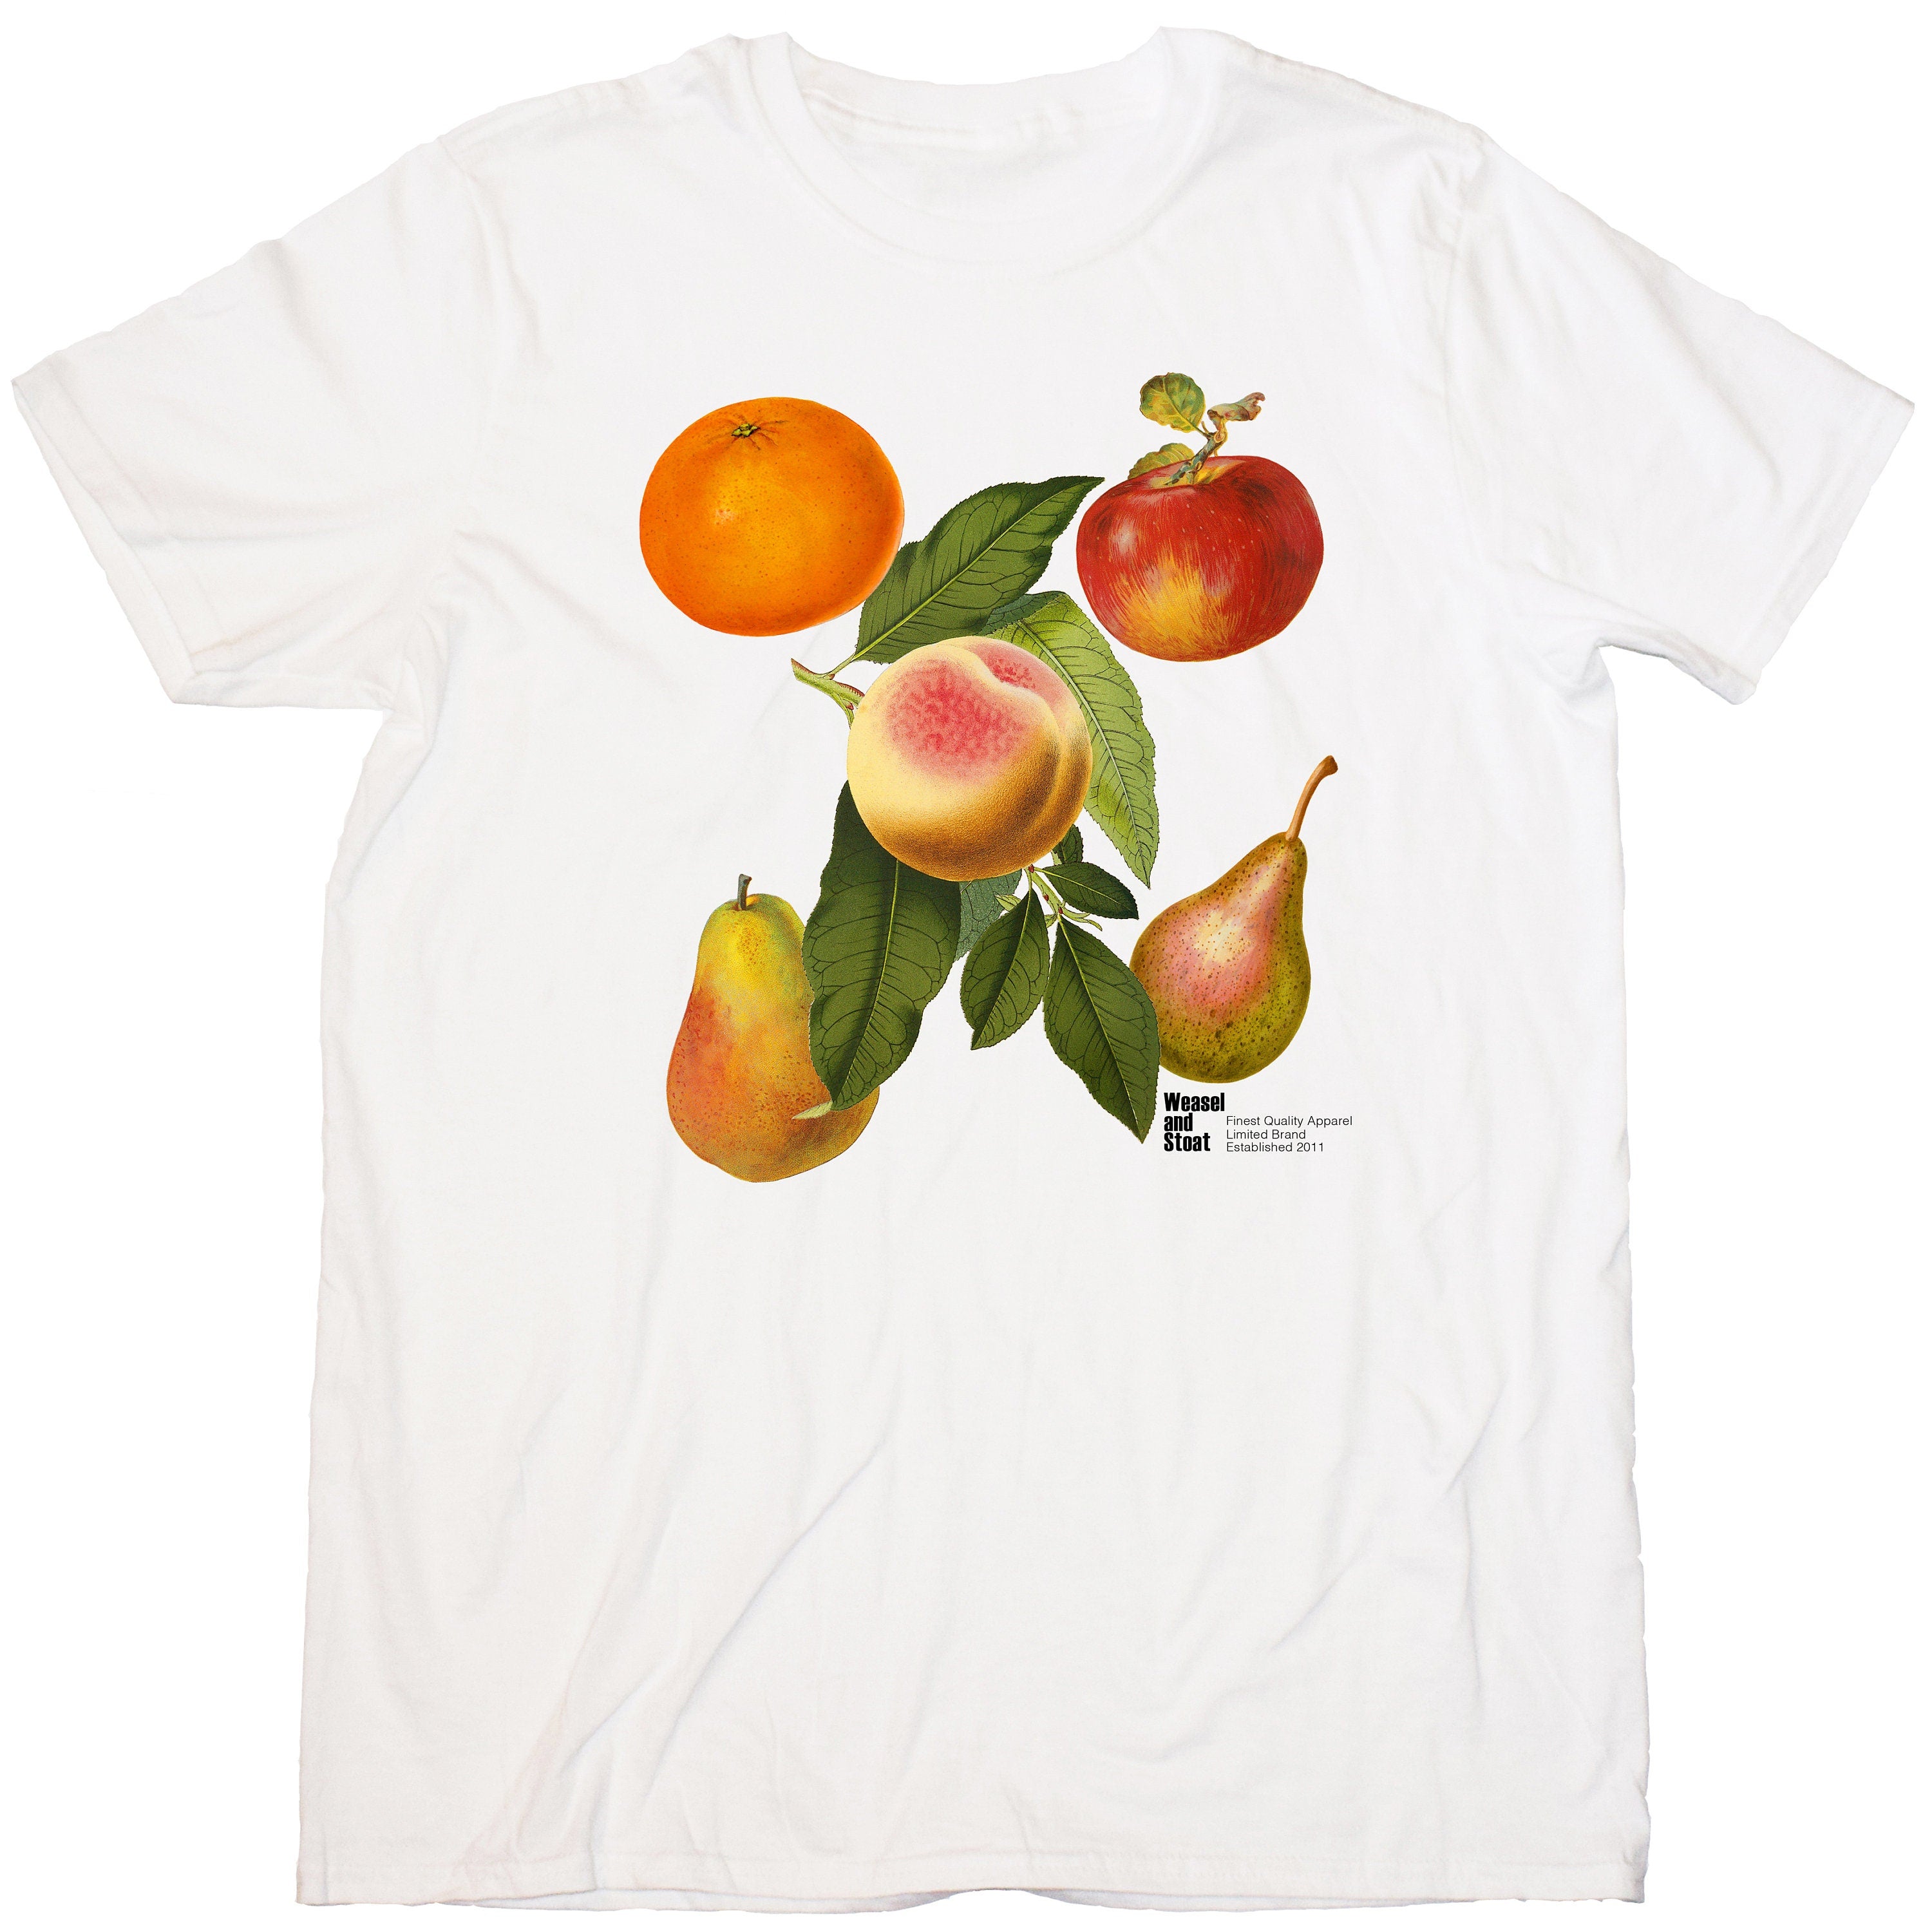 Vintage Fruit T-Shirt - Classic White Tee with British Fruit Illustration - Unisex Boho Apparel - Retro Botanical Shirt - Aesthetic Tee Gift